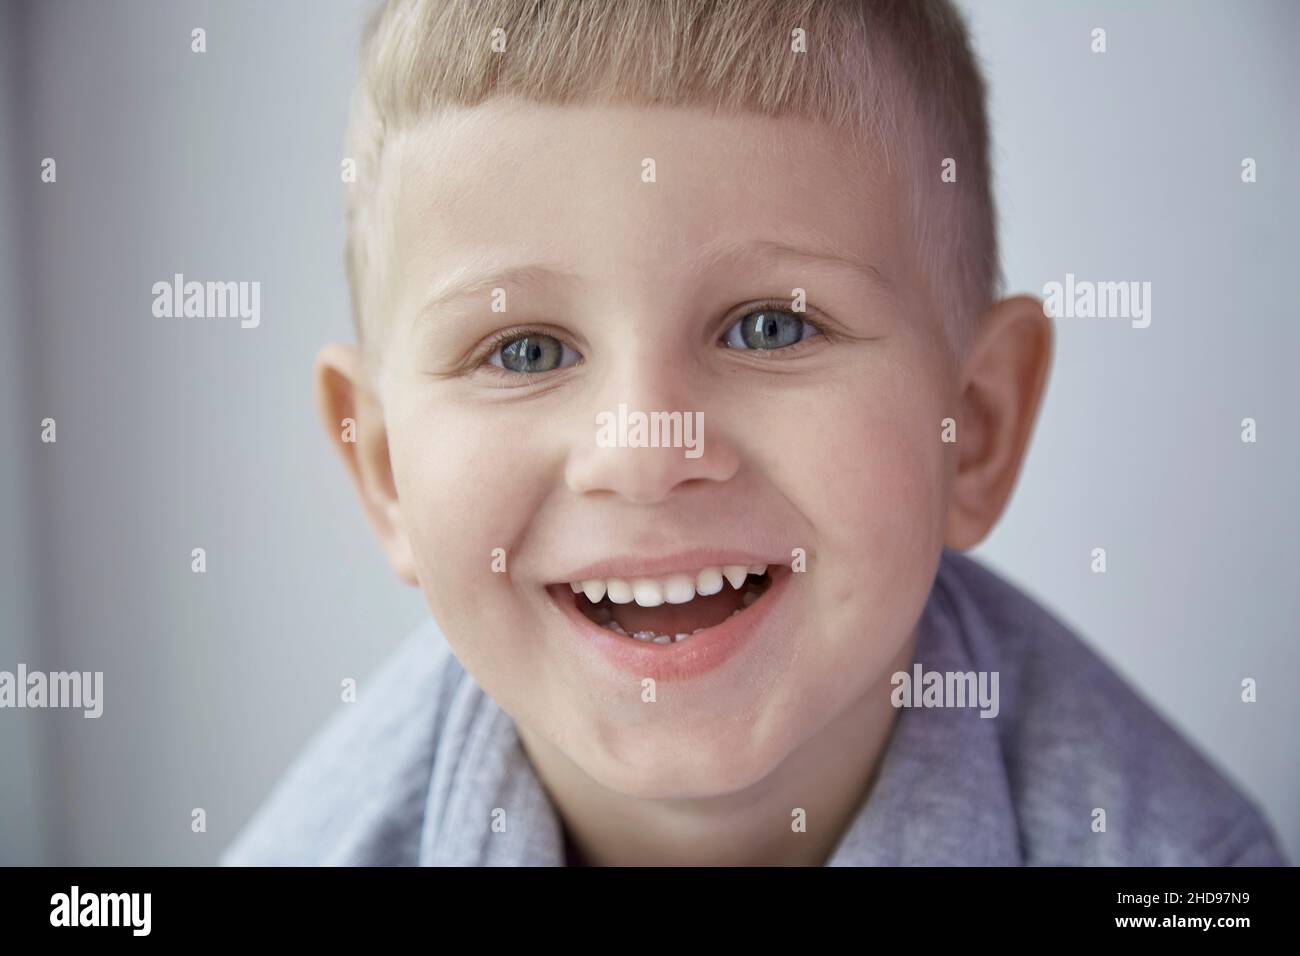 Ritratto di ragazzo sorridente carino guardando la fotocamera da vicino. Infanzia, collage, stomatologia concetto. Espressione felice. Foto di alta qualità Foto Stock